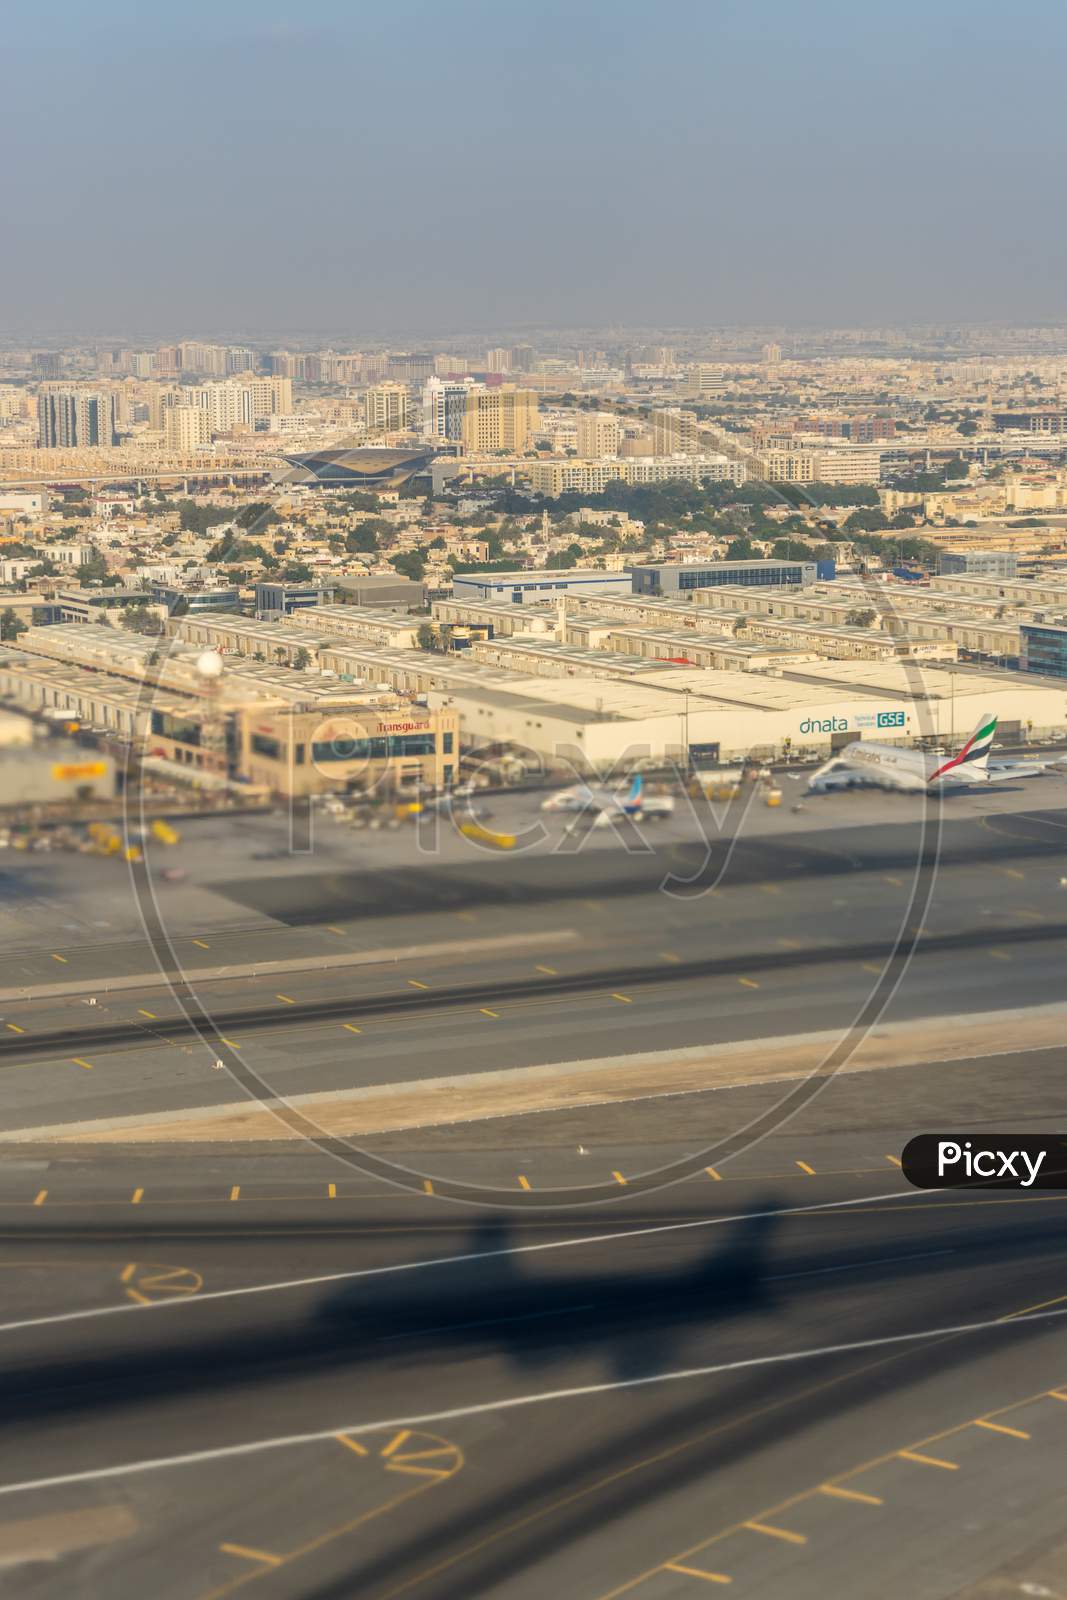 Dubai, Emirates - 18 November 2018: Dnata Air Cargo City And Bud Tnt Hangar At Airport At Dubai